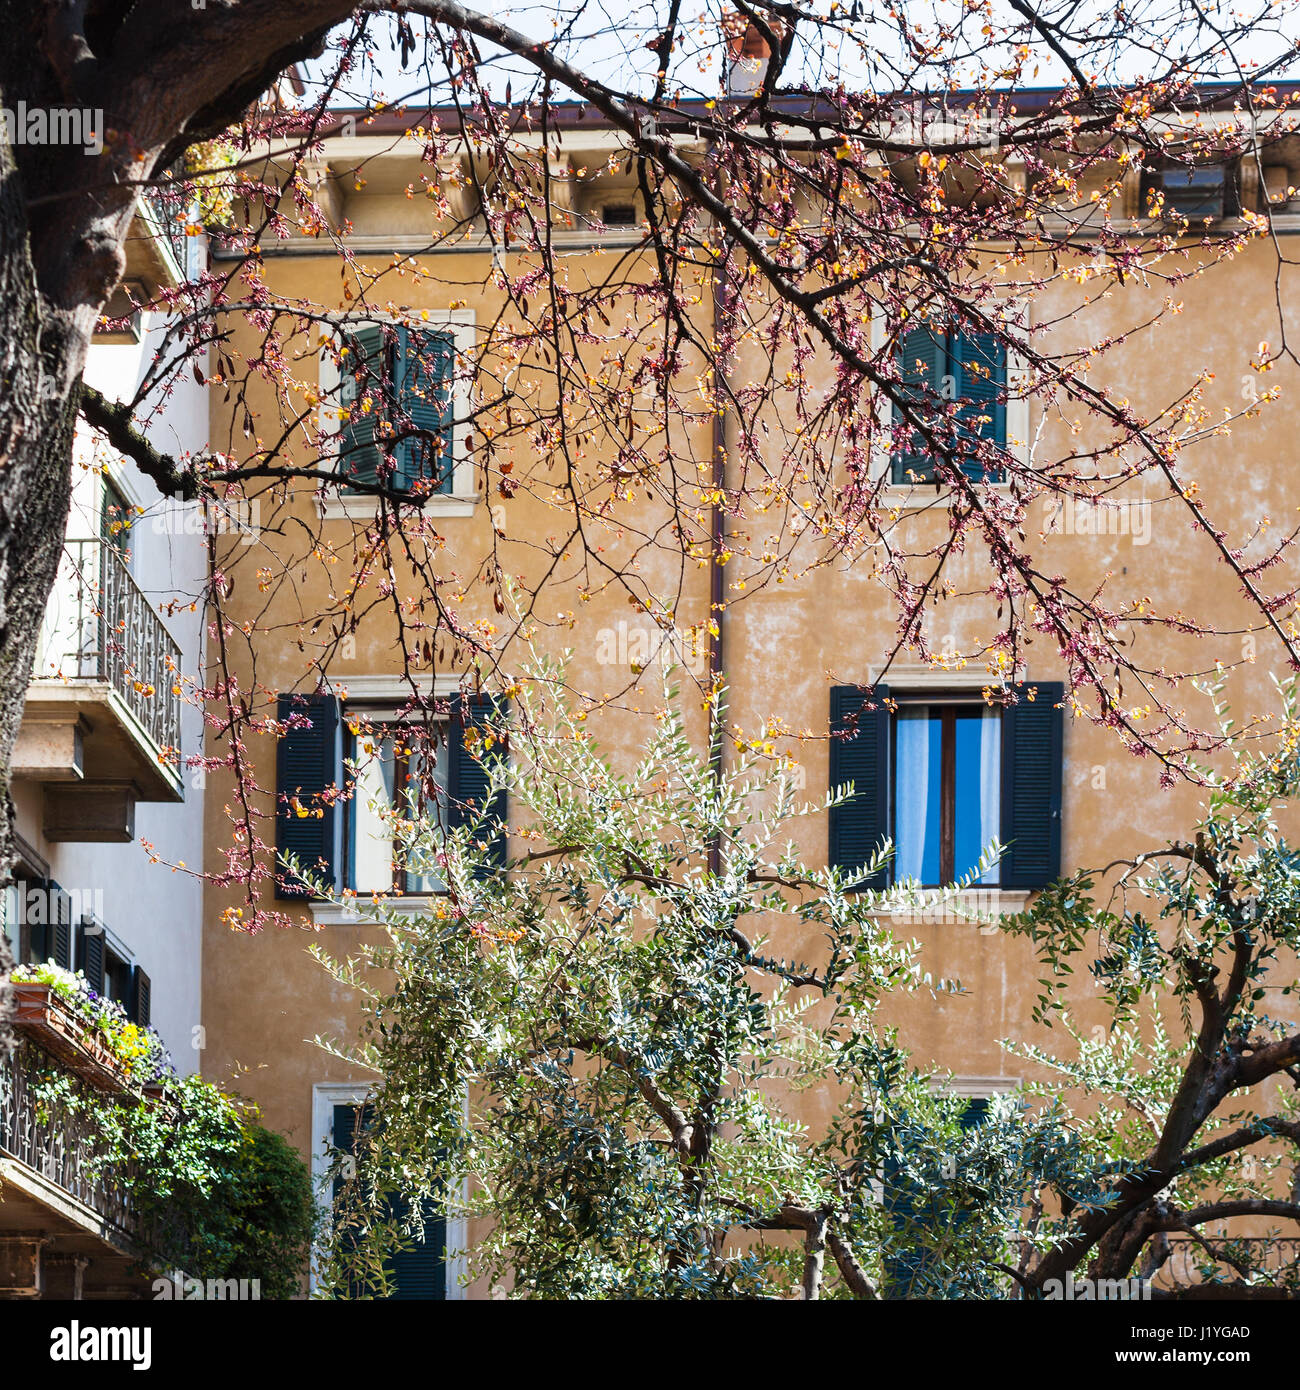 Voyage d'Italie - floraison cercis et acacias sur rue dans la ville de Vérone au printemps Banque D'Images